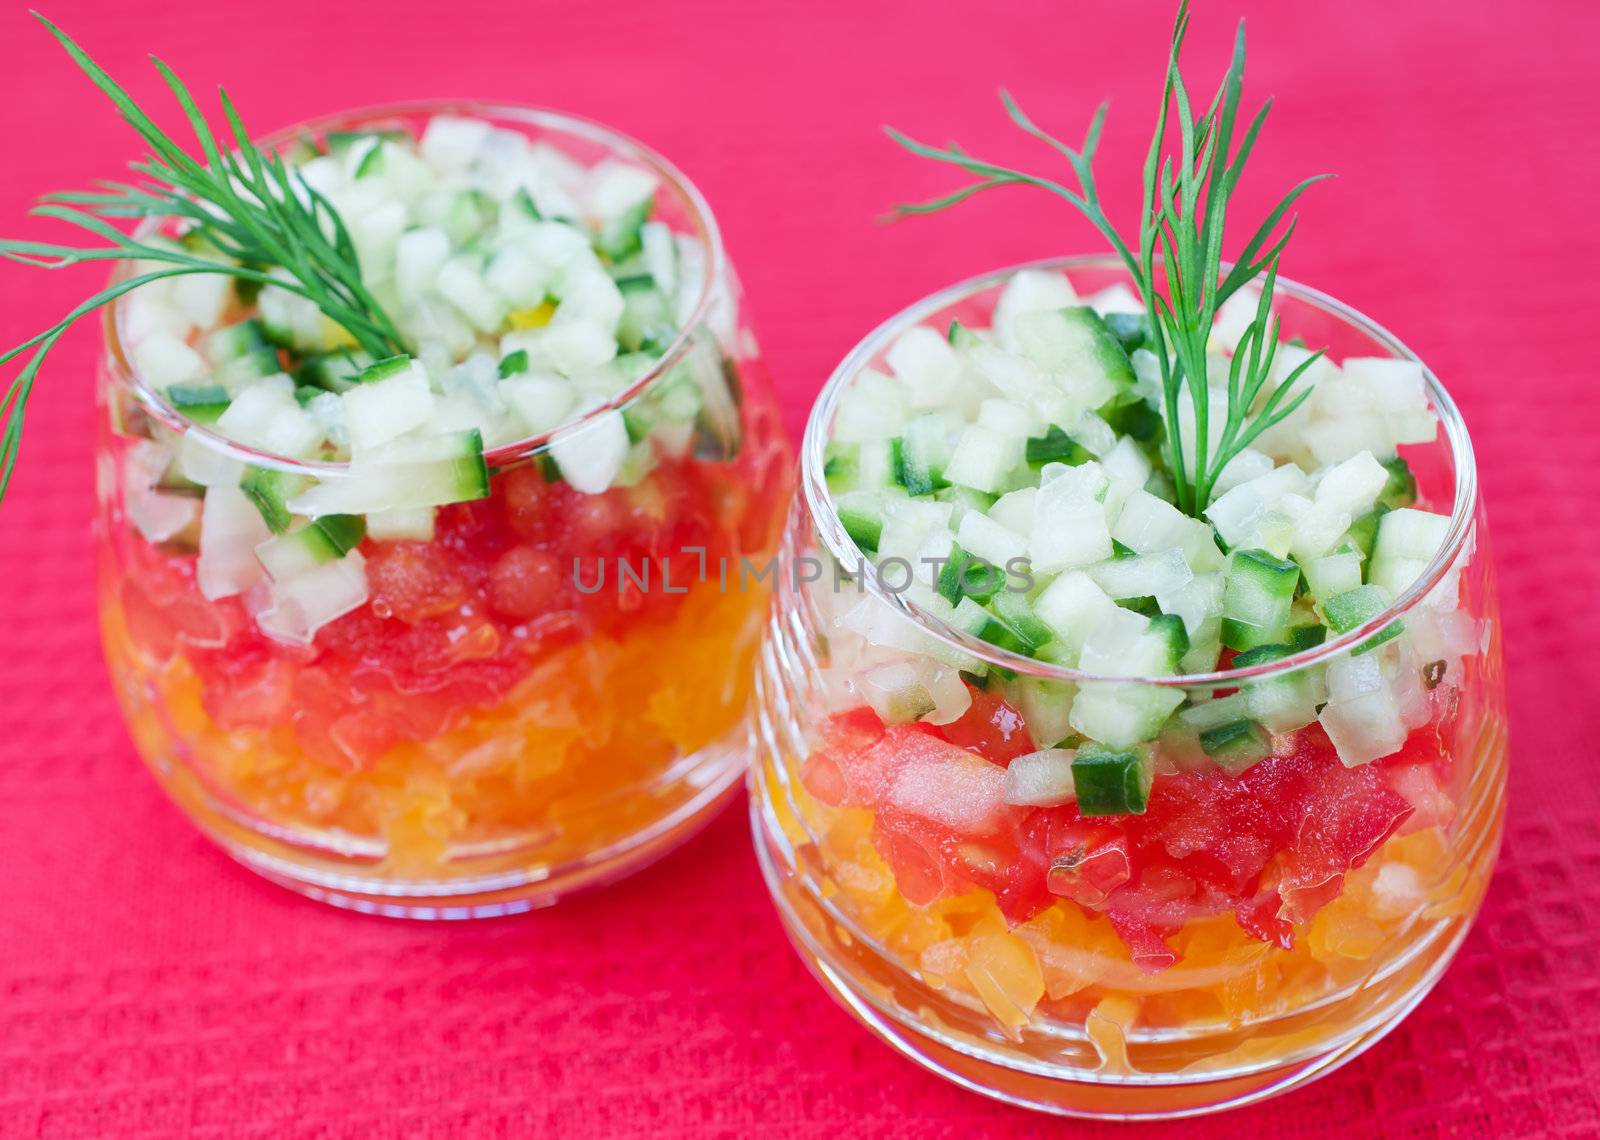 Vegetable salad by Nanisimova